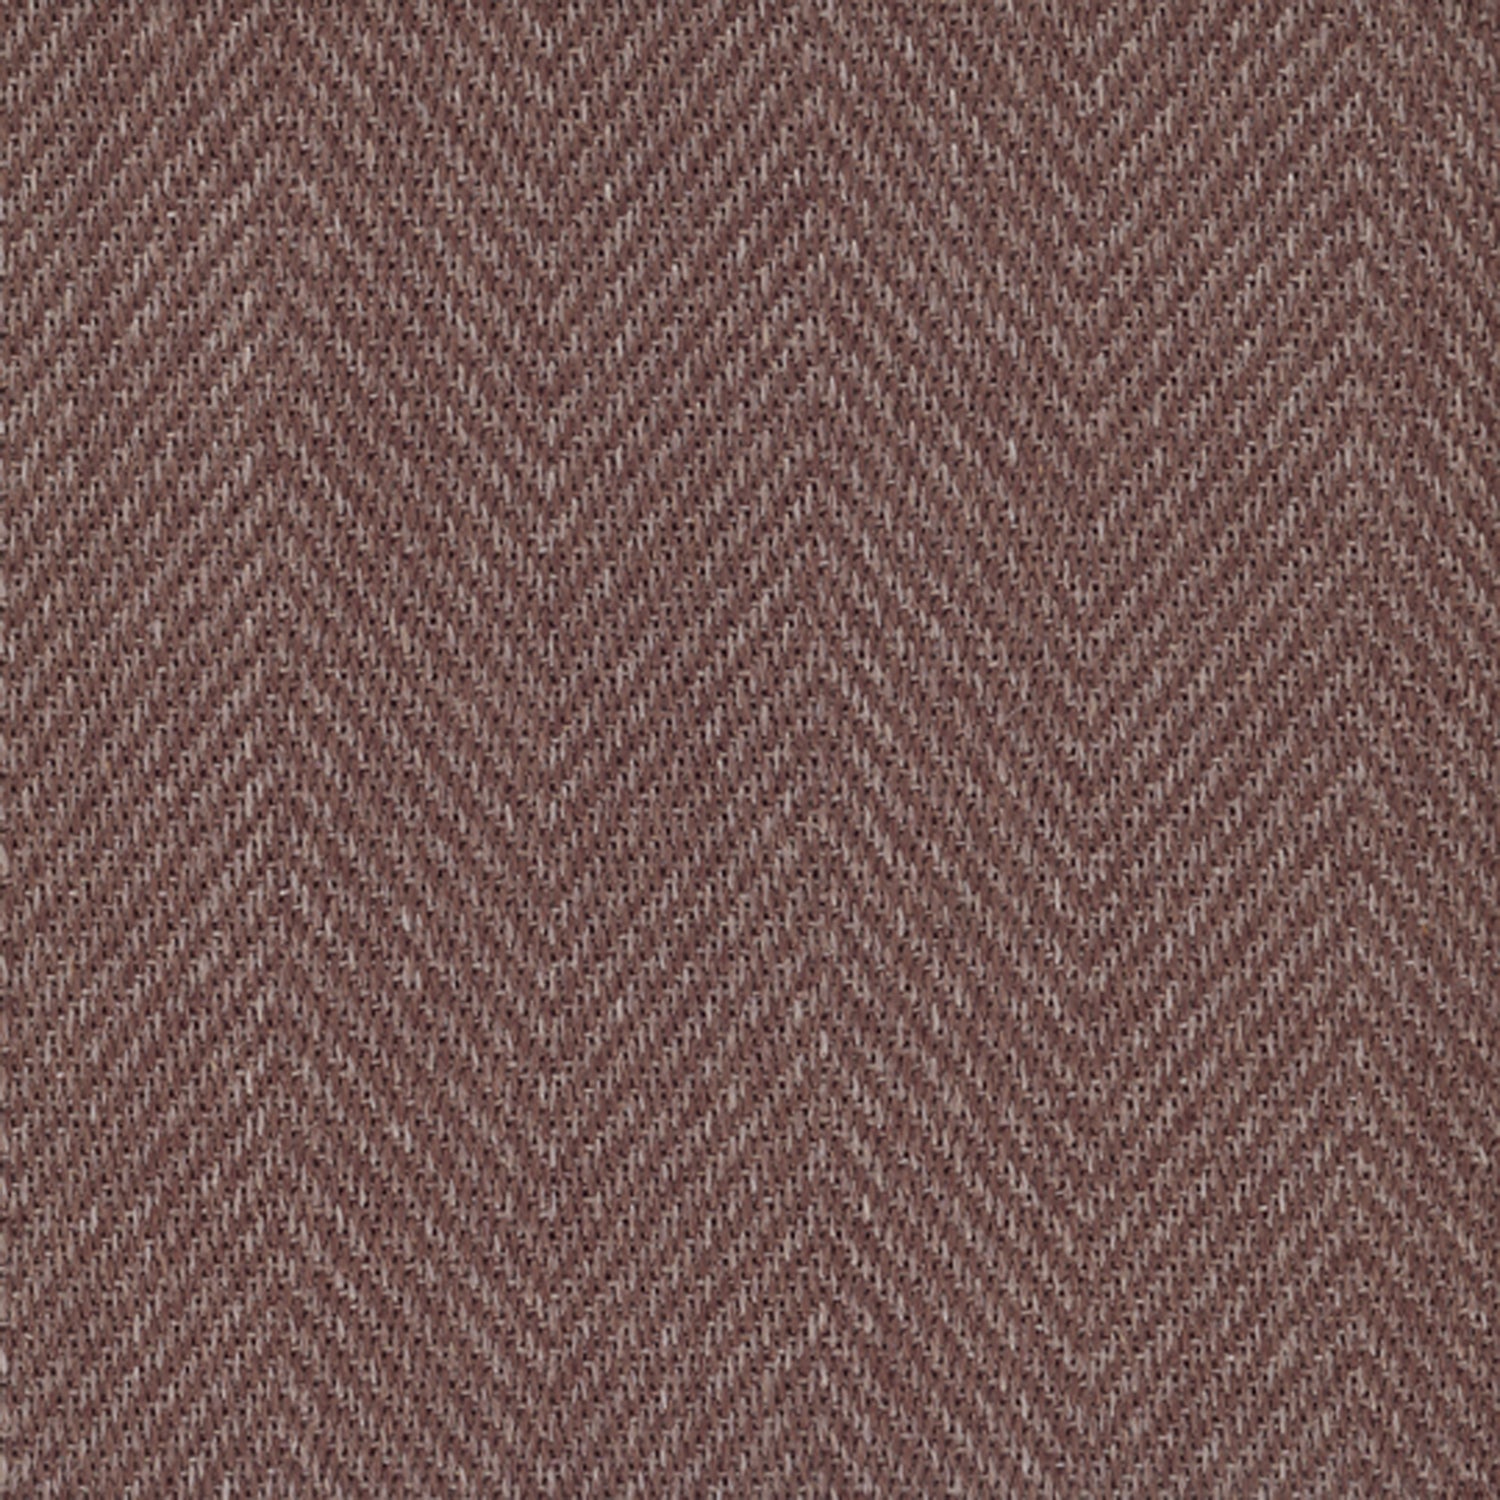 Sisal broadloom carpet swatch in a herringbone weave in maroon and sable.